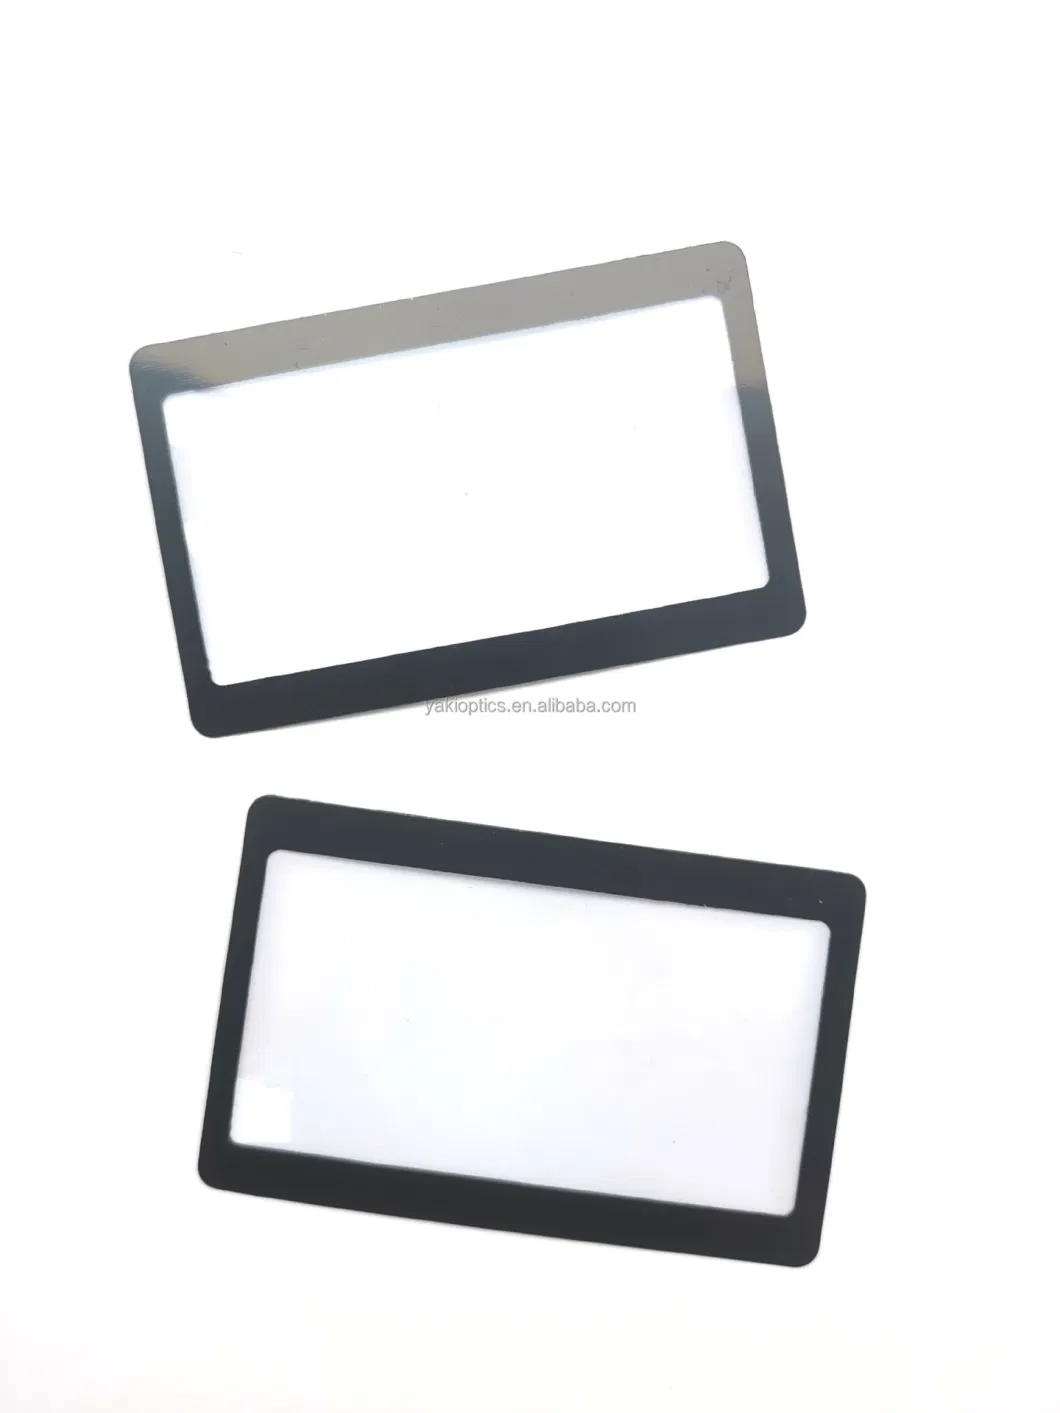 Pocket Transparent Credit Card Magnifying Lenses. - 300% Fresnel Magnifier